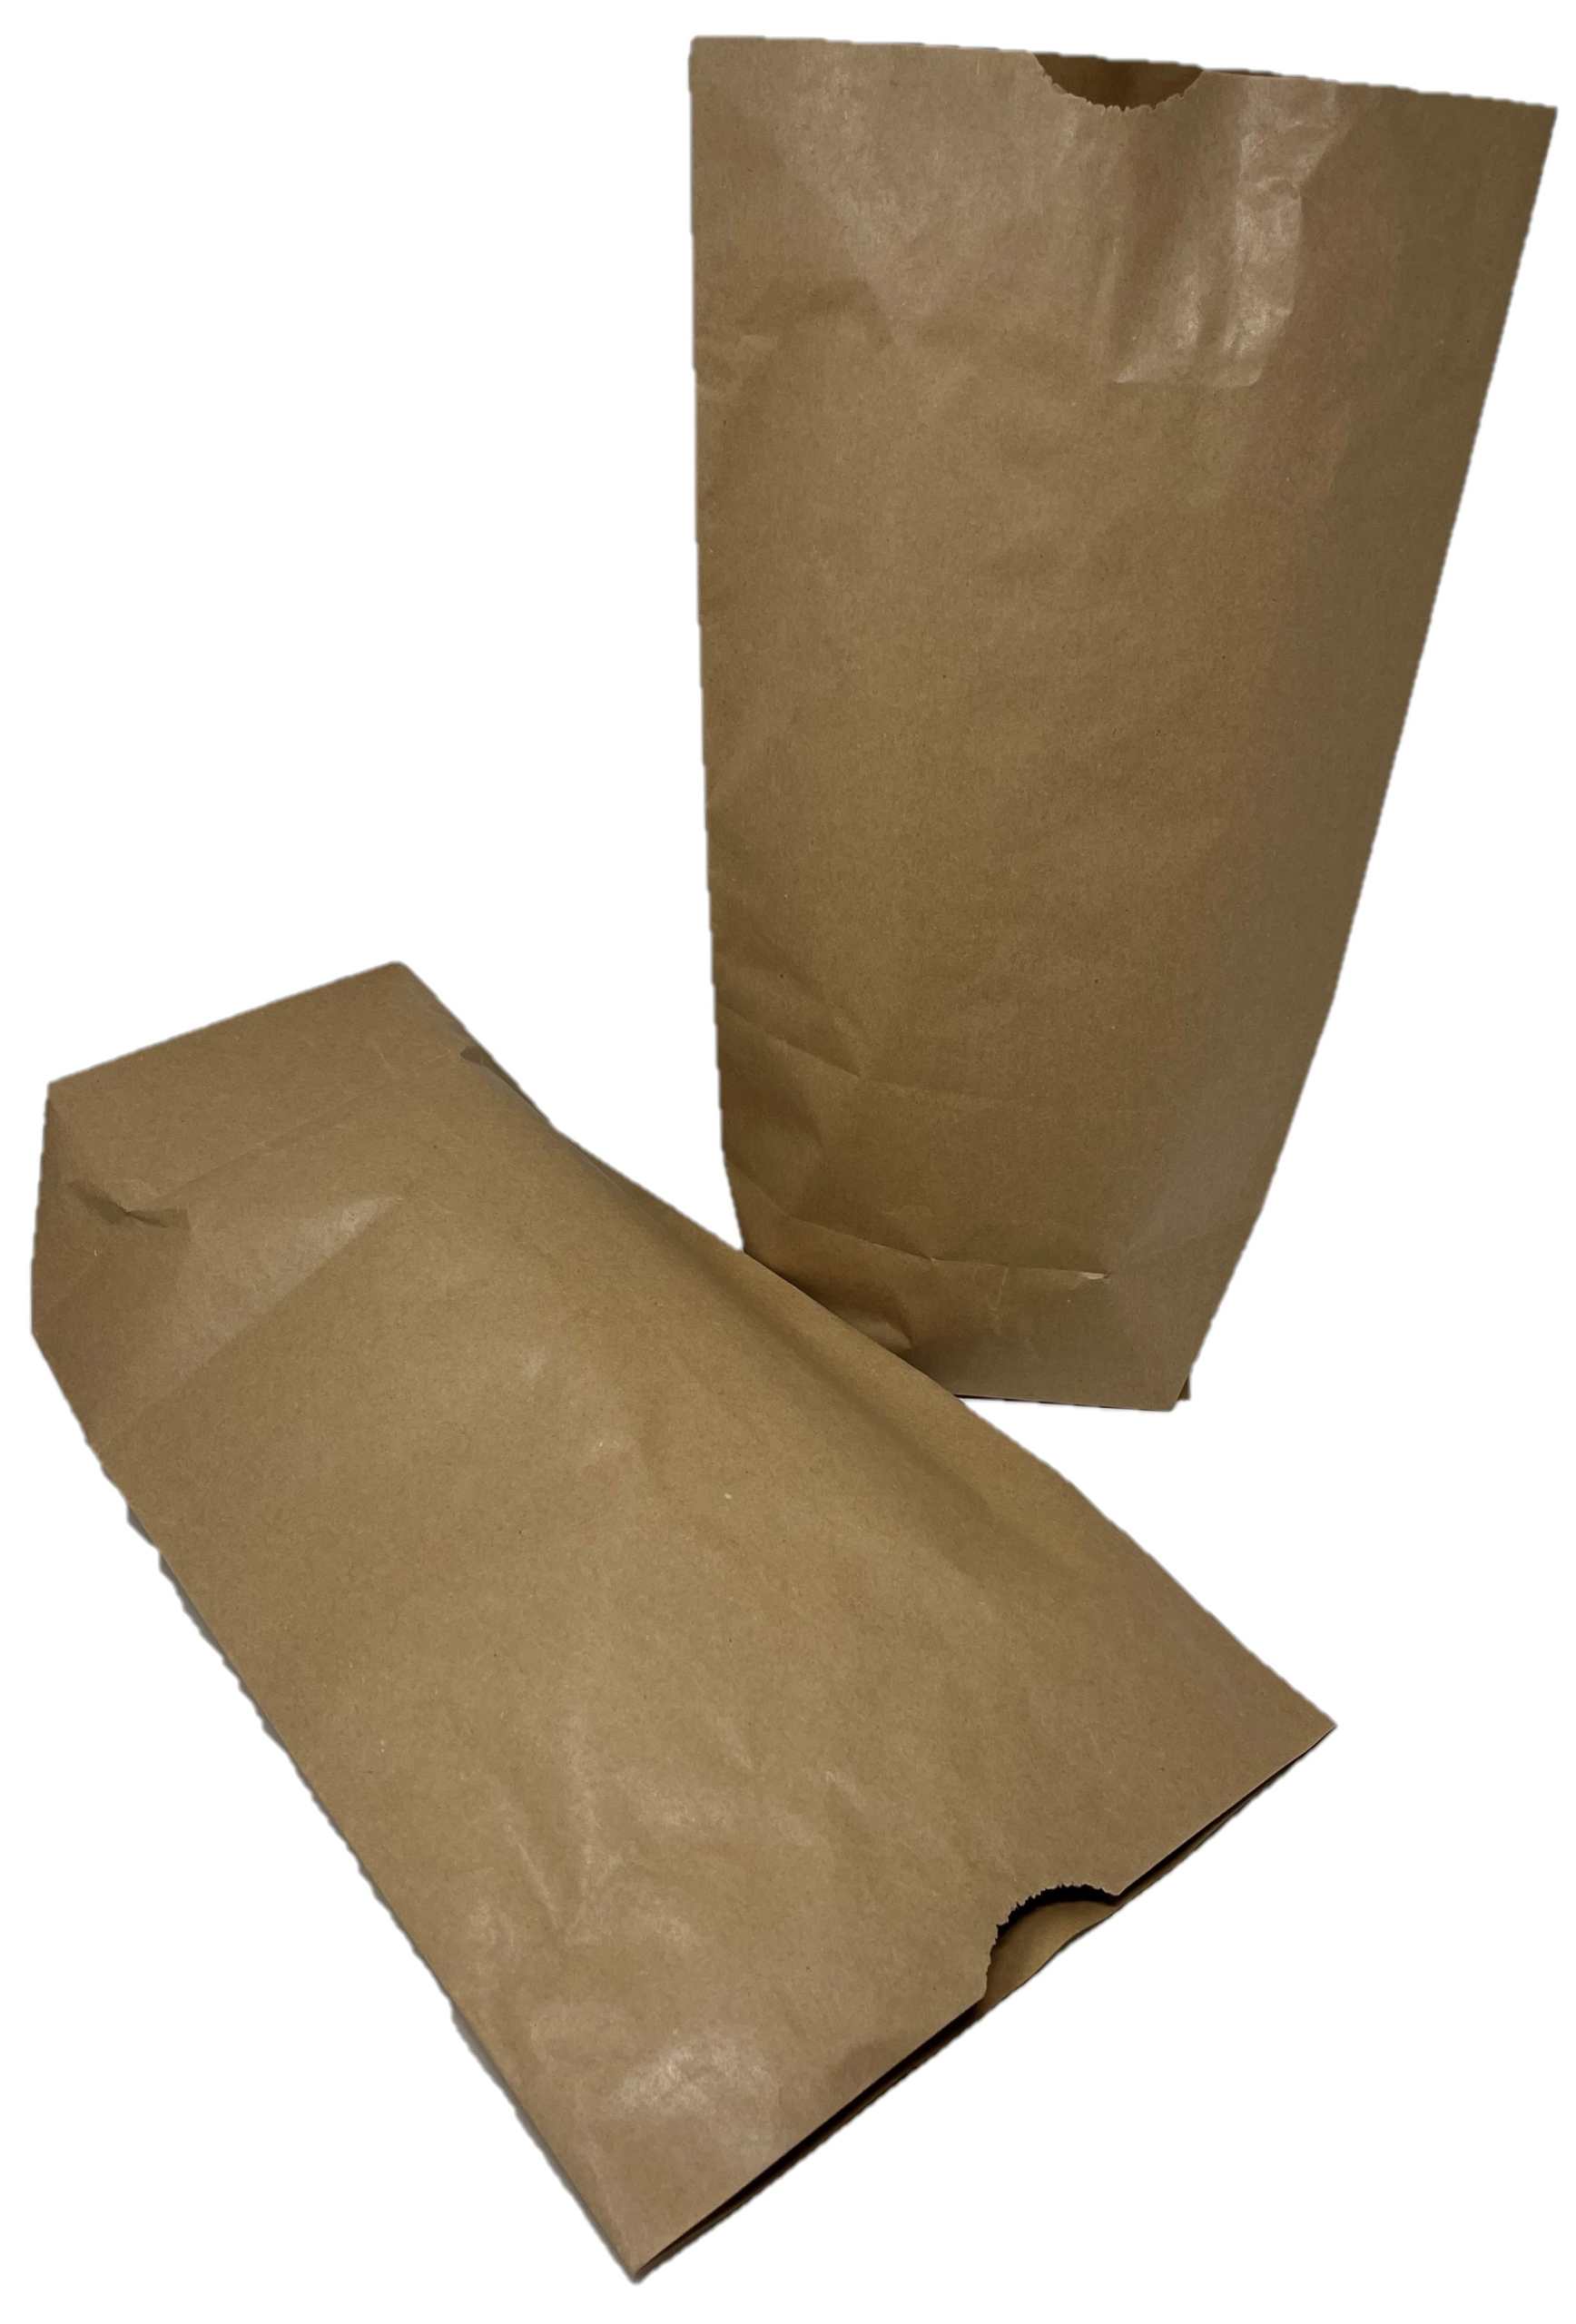 Papierbeutel braun ohne Henkel, braun ÖKO-Flex mit Kreuzboden, 2-lagig, 2 x 60 gr., ungefädelt